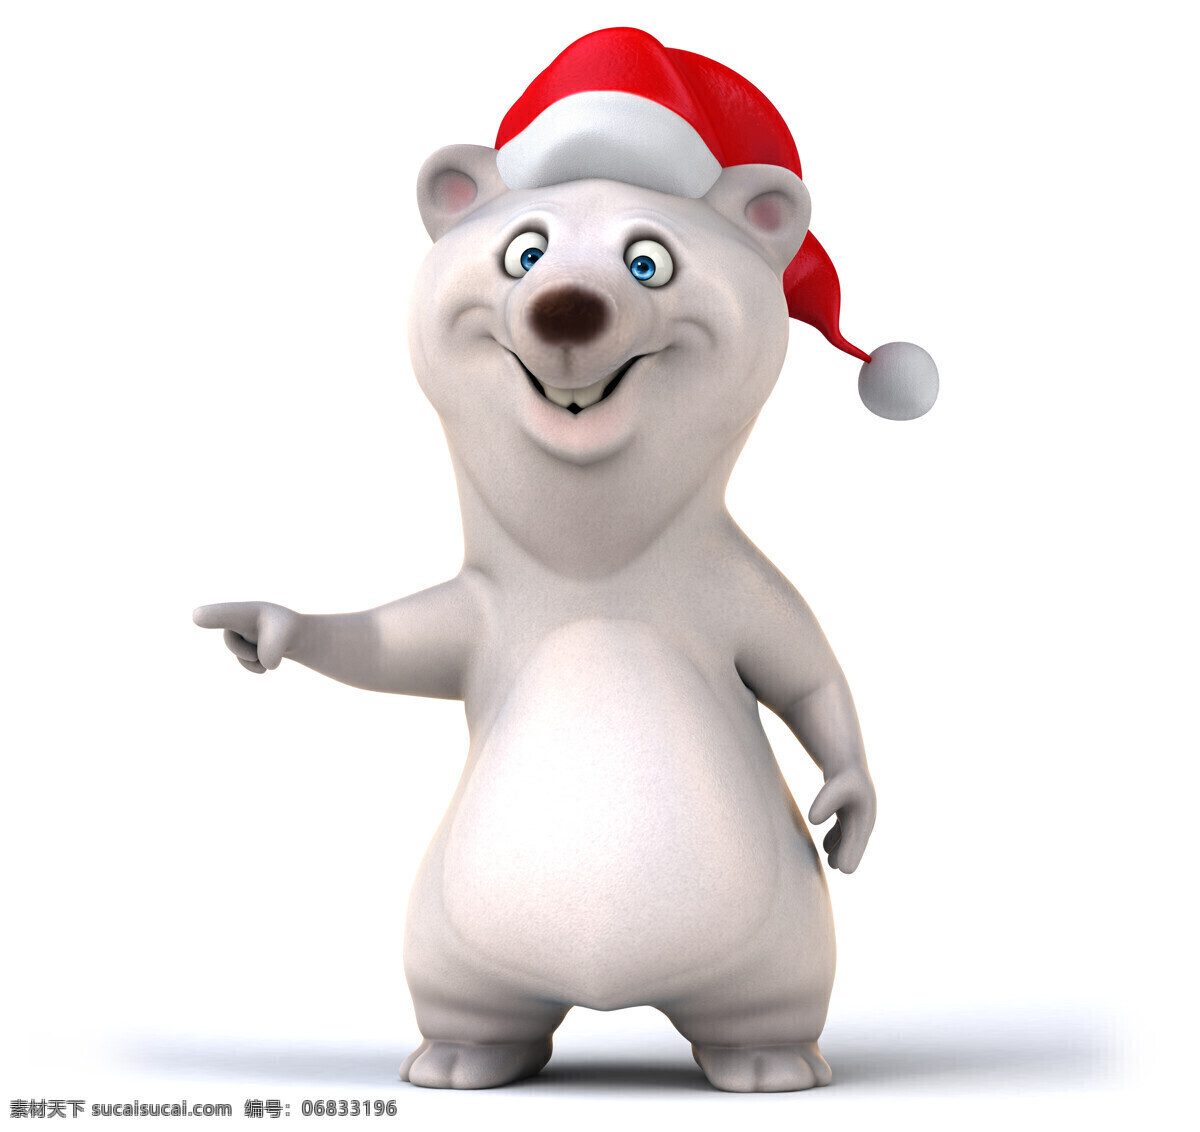 3d 动物图片 3d设计 圣诞节 圣诞帽 3d动物 卡通动物表情 地鼠 3d模型素材 其他3d模型